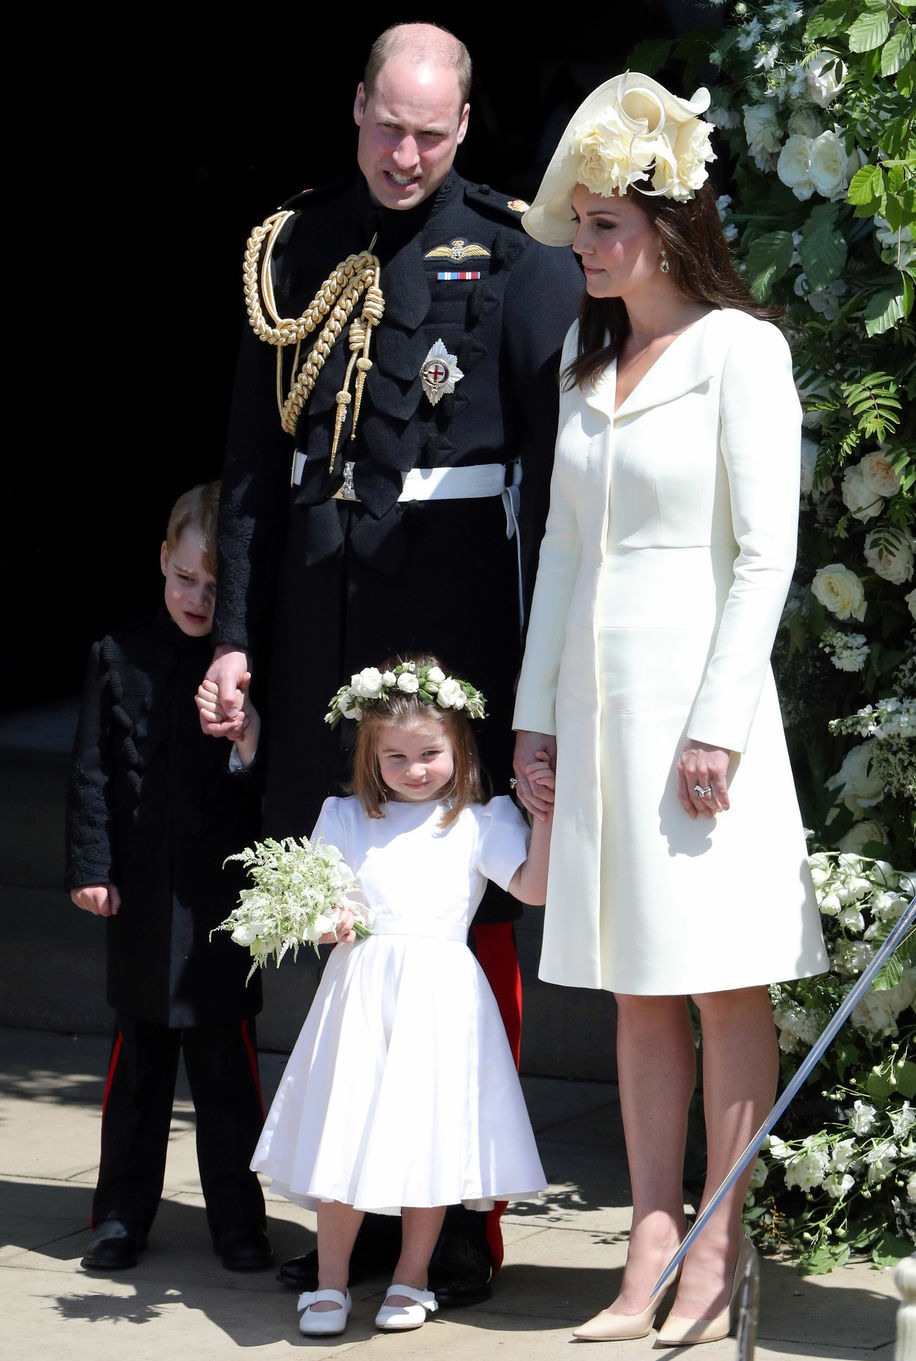 Royal Wedding of Prince Harry and Meghan Markle